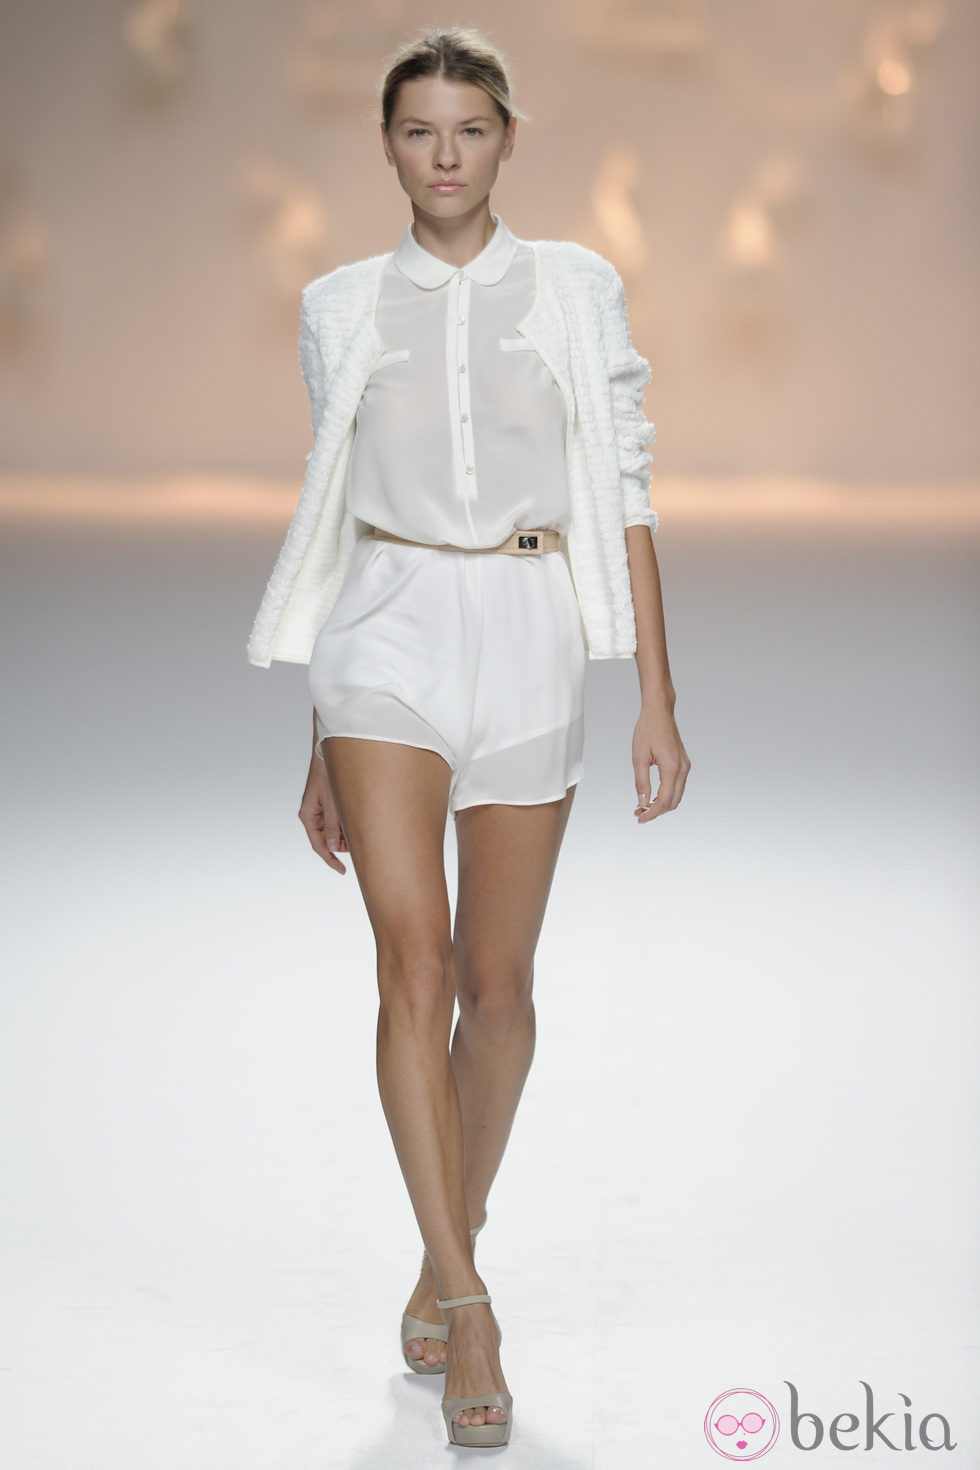 Pantalón corto blanco y blusa blanca de botones de la colección primavera/verano 2013 de Sita Murt